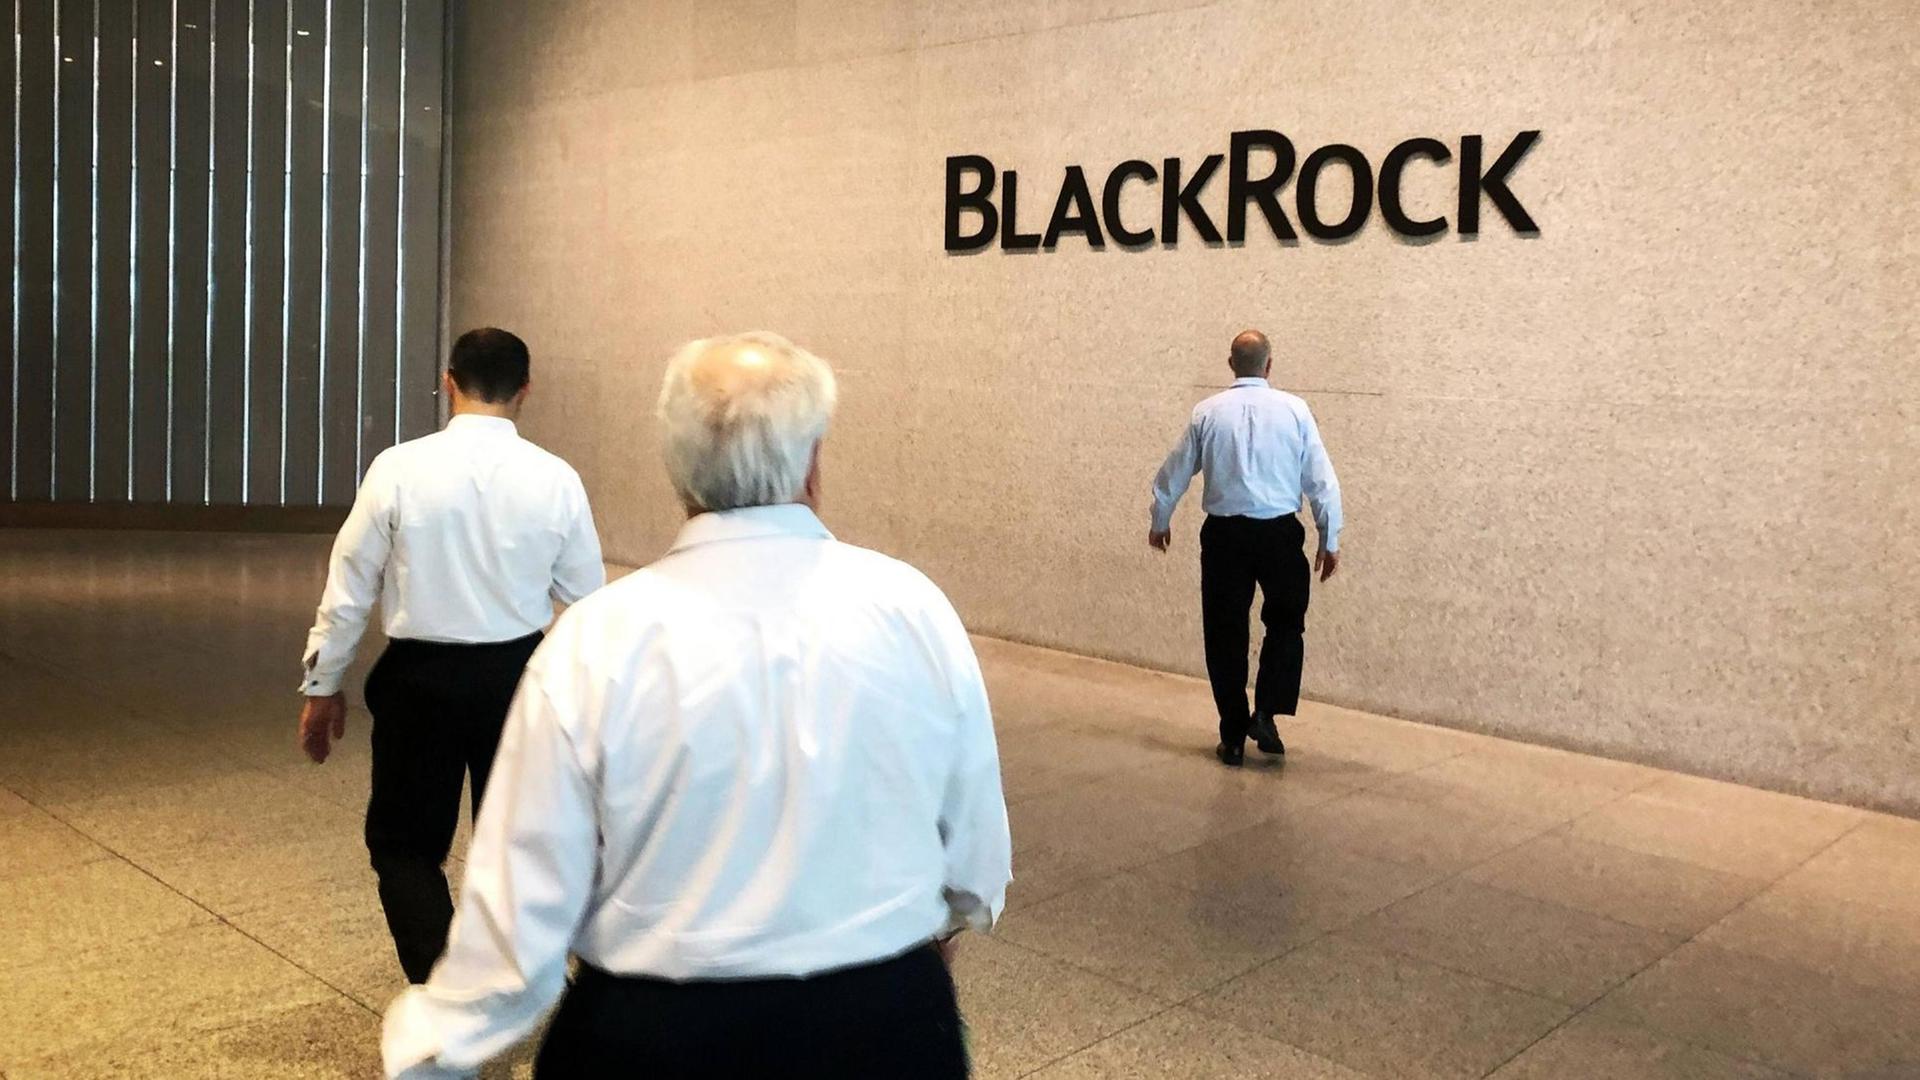 Firmensitz von BlackRock in New York. Drei Männer laufen in einer Halle, im Hintergrund steht an einer Wand BlackRock.